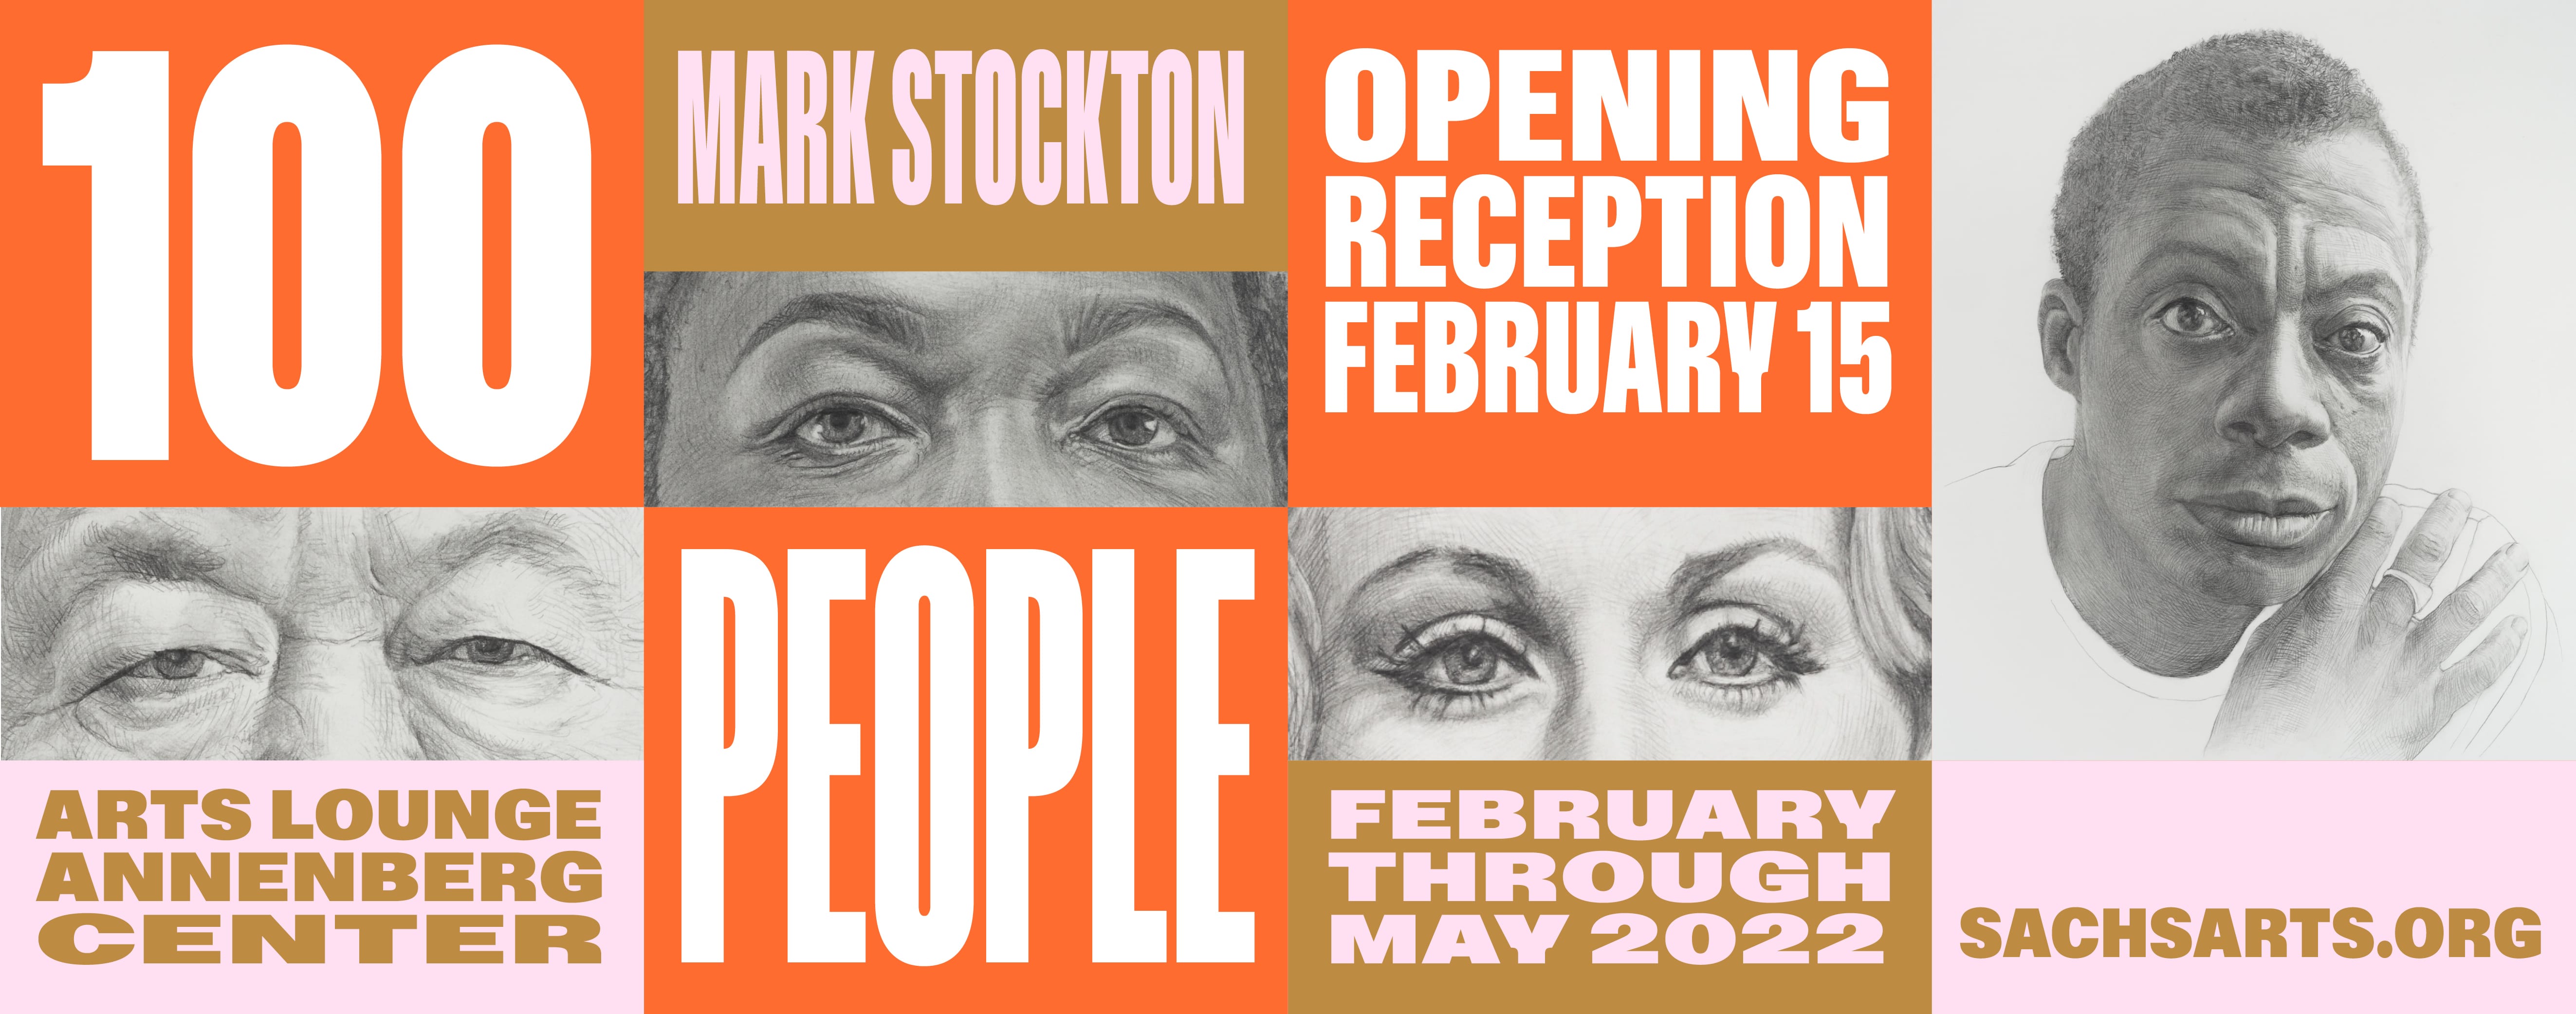 Mark Stockton: 100 People